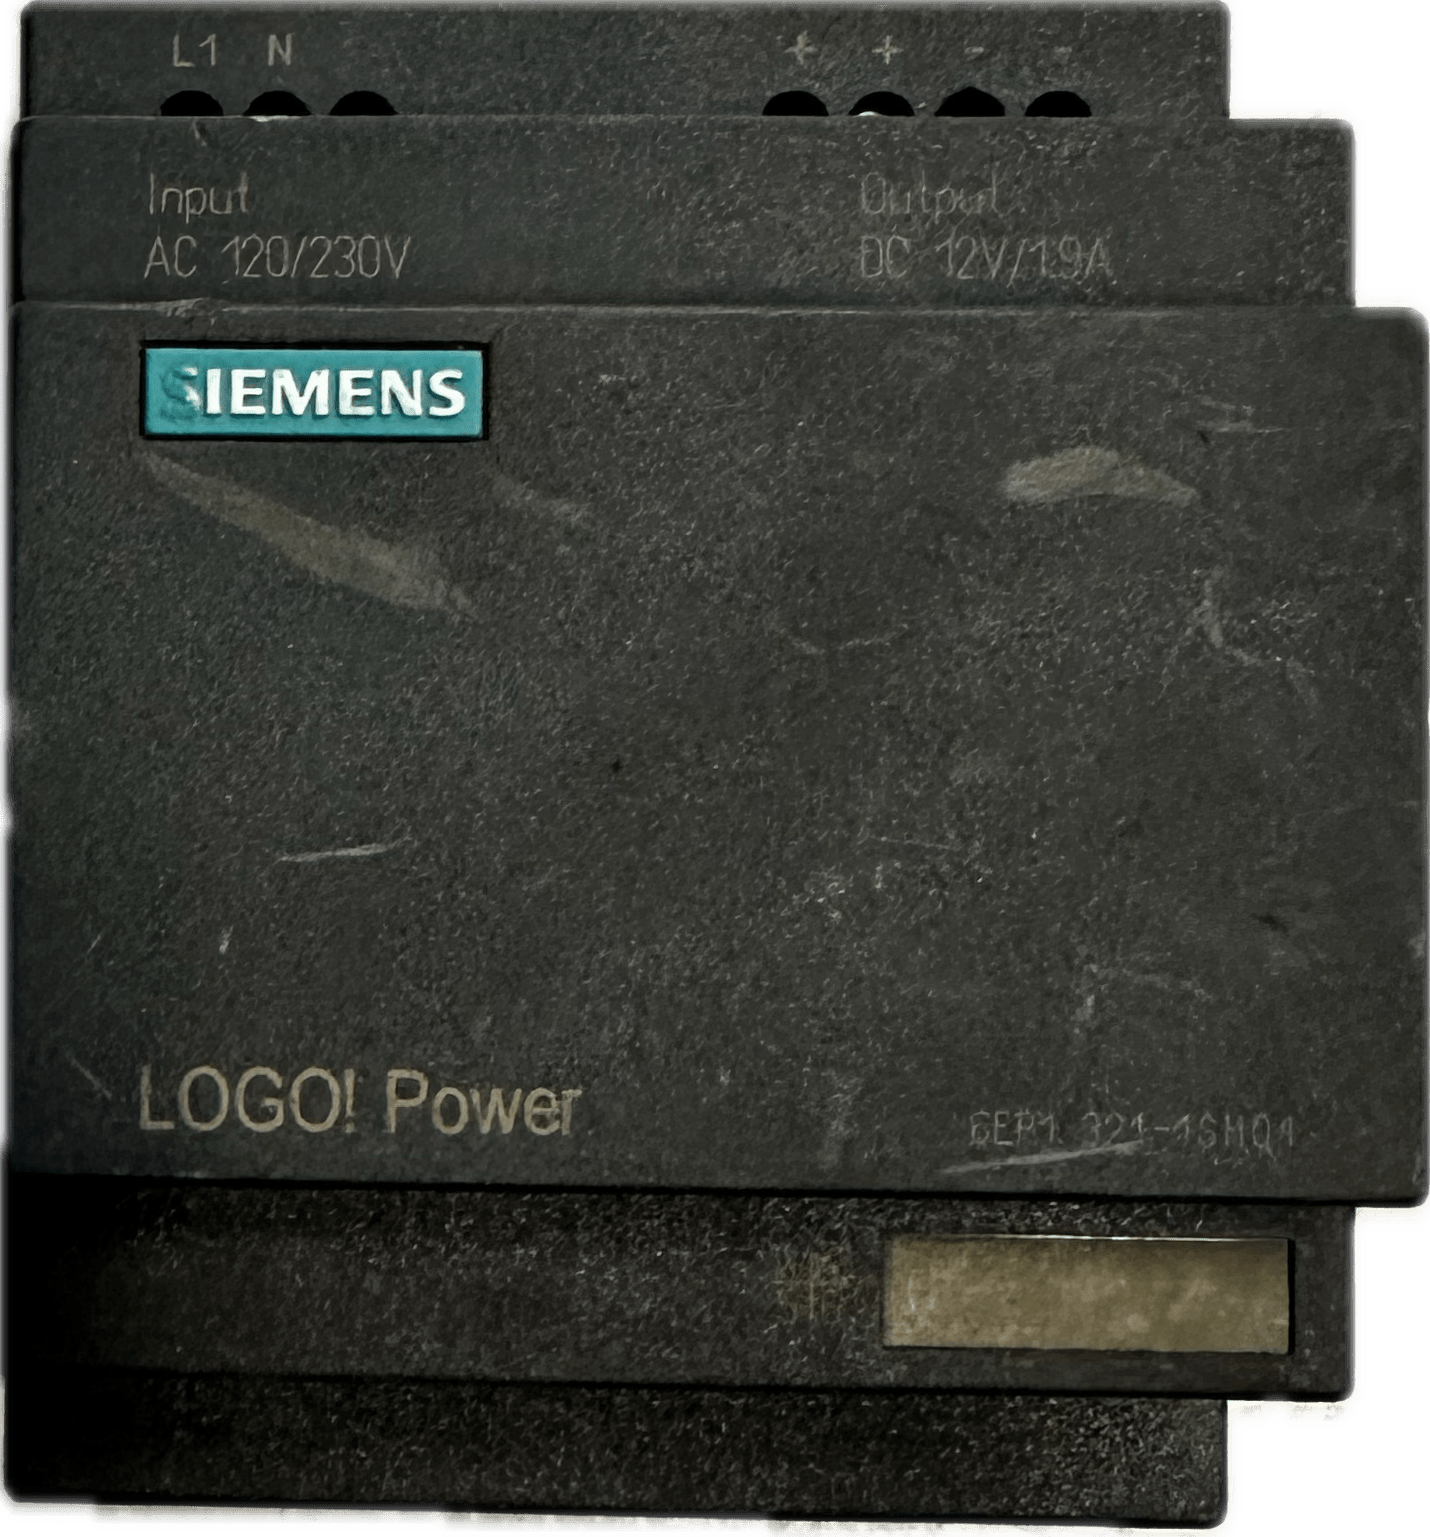 Siemens LOGO!Power 6EP1321-1SH01 - #product_category# | Klenk Maschinenhandel